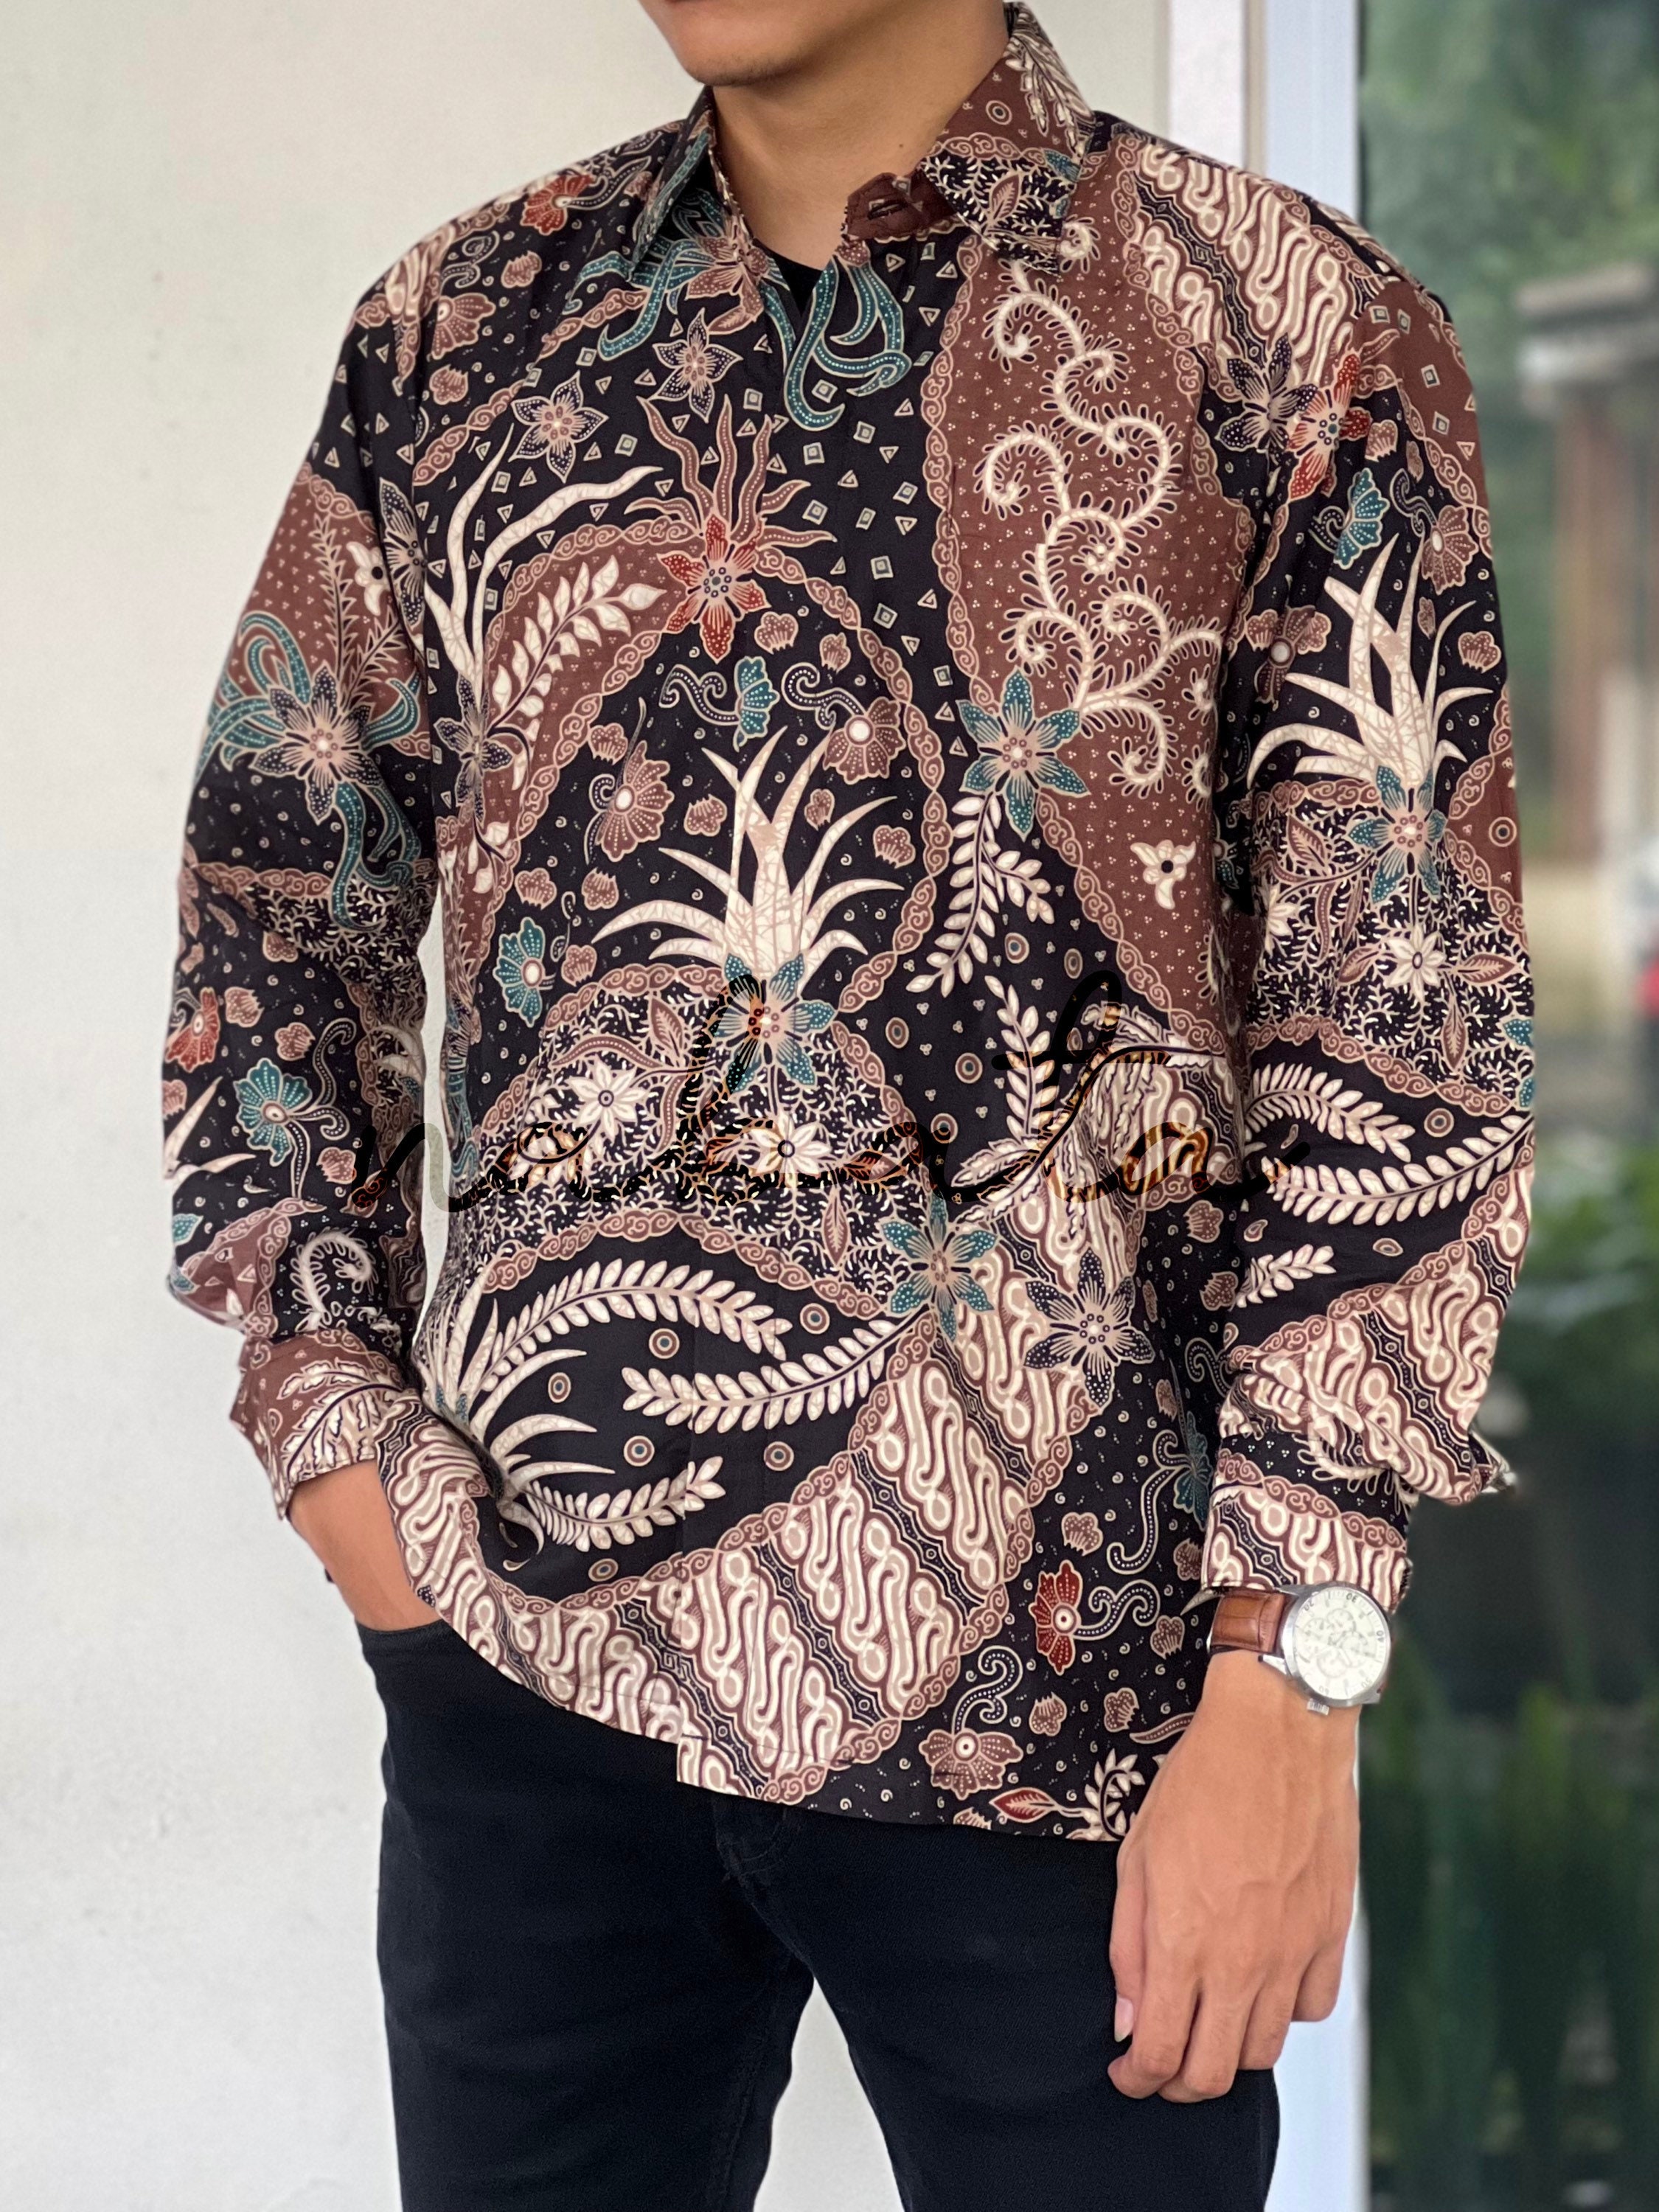 zusammengesetzt Waffe Übertreibung batik shirt malaysia sehr Lame Ergebnis